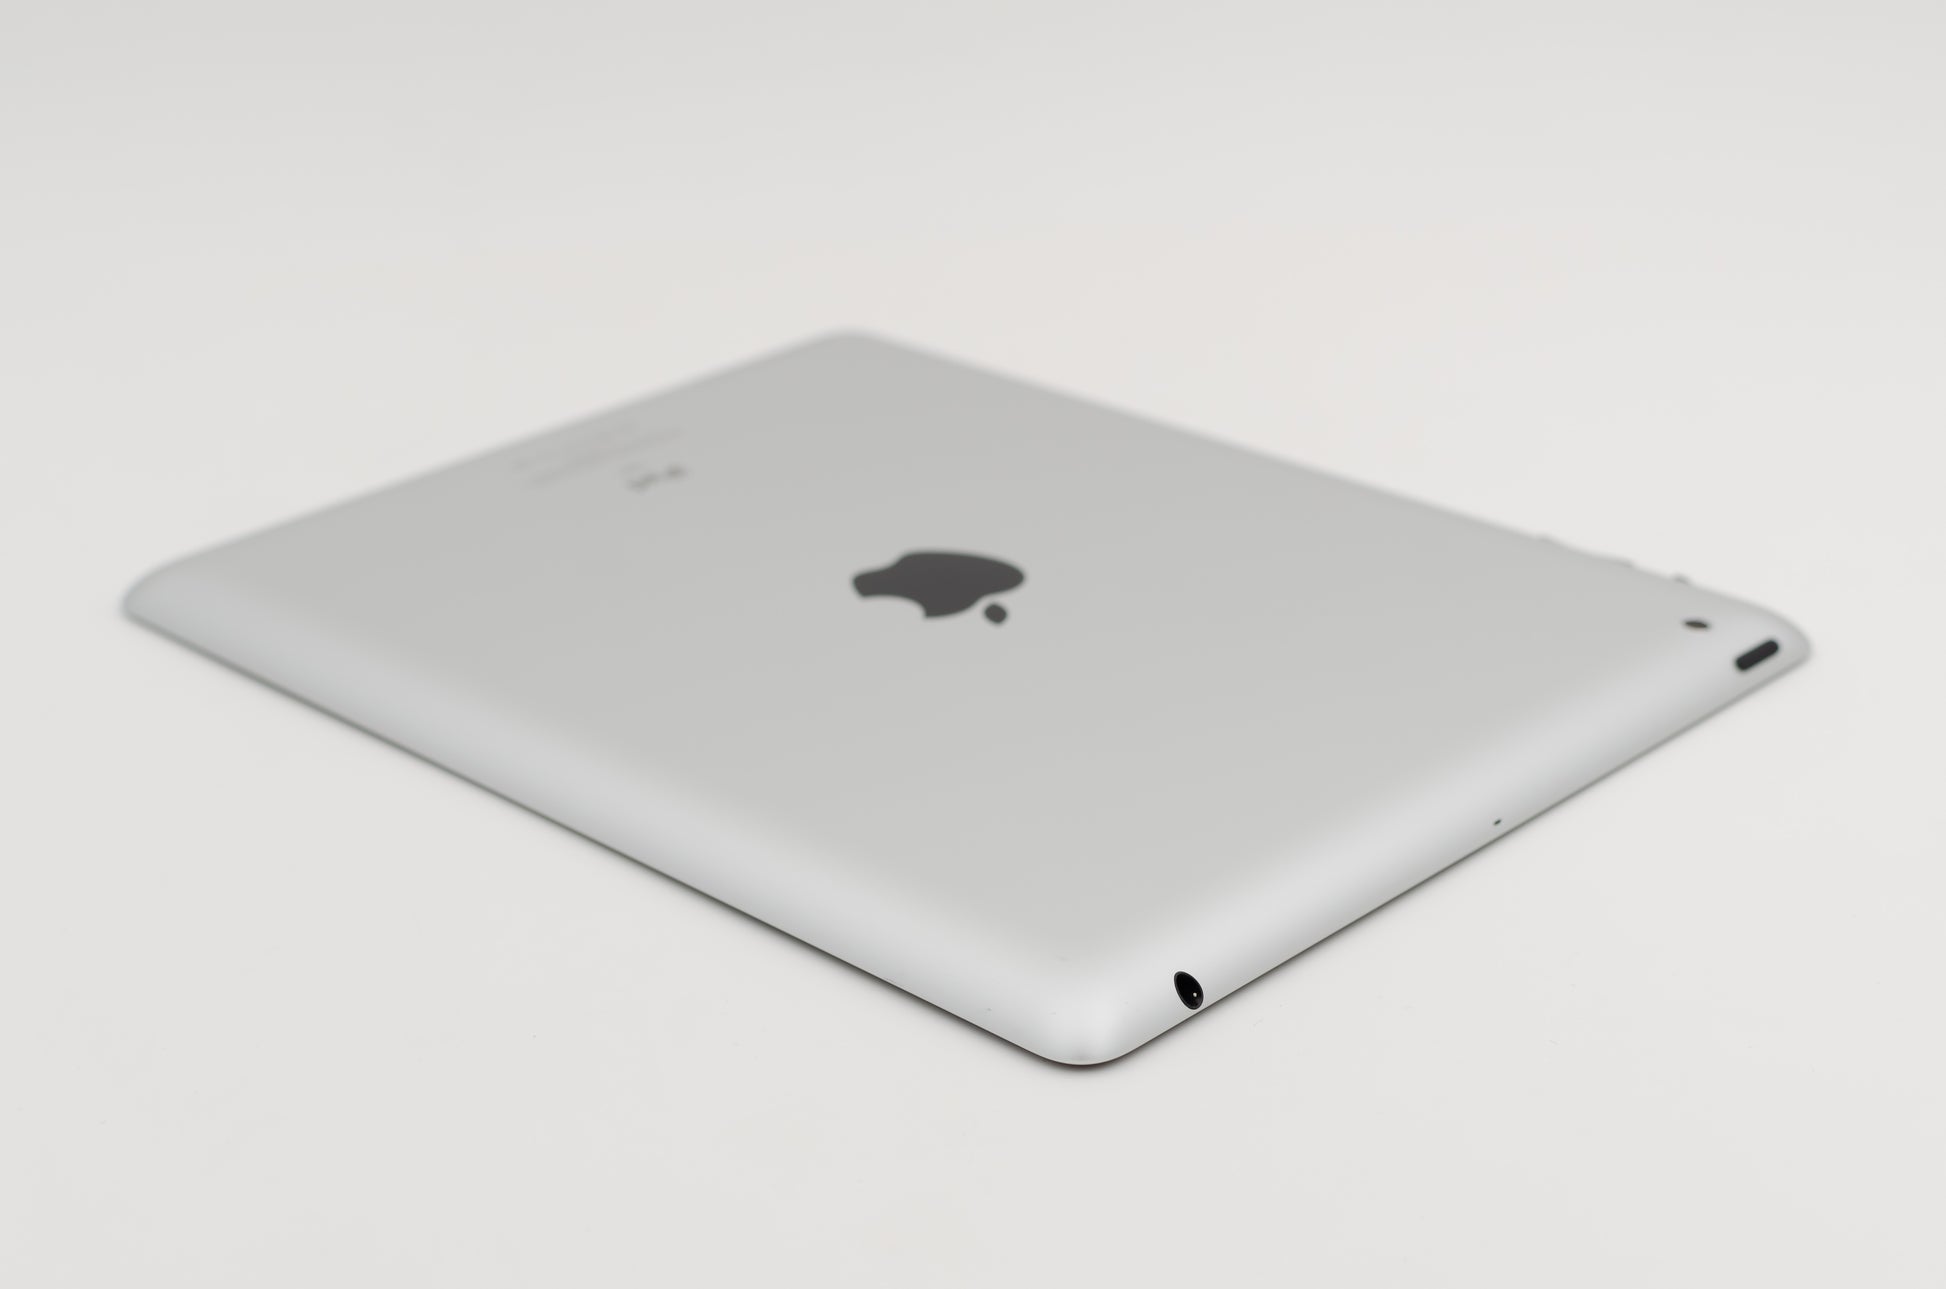 apple-2011-9.7-inch-ipad-2-a1396-silver/black-3